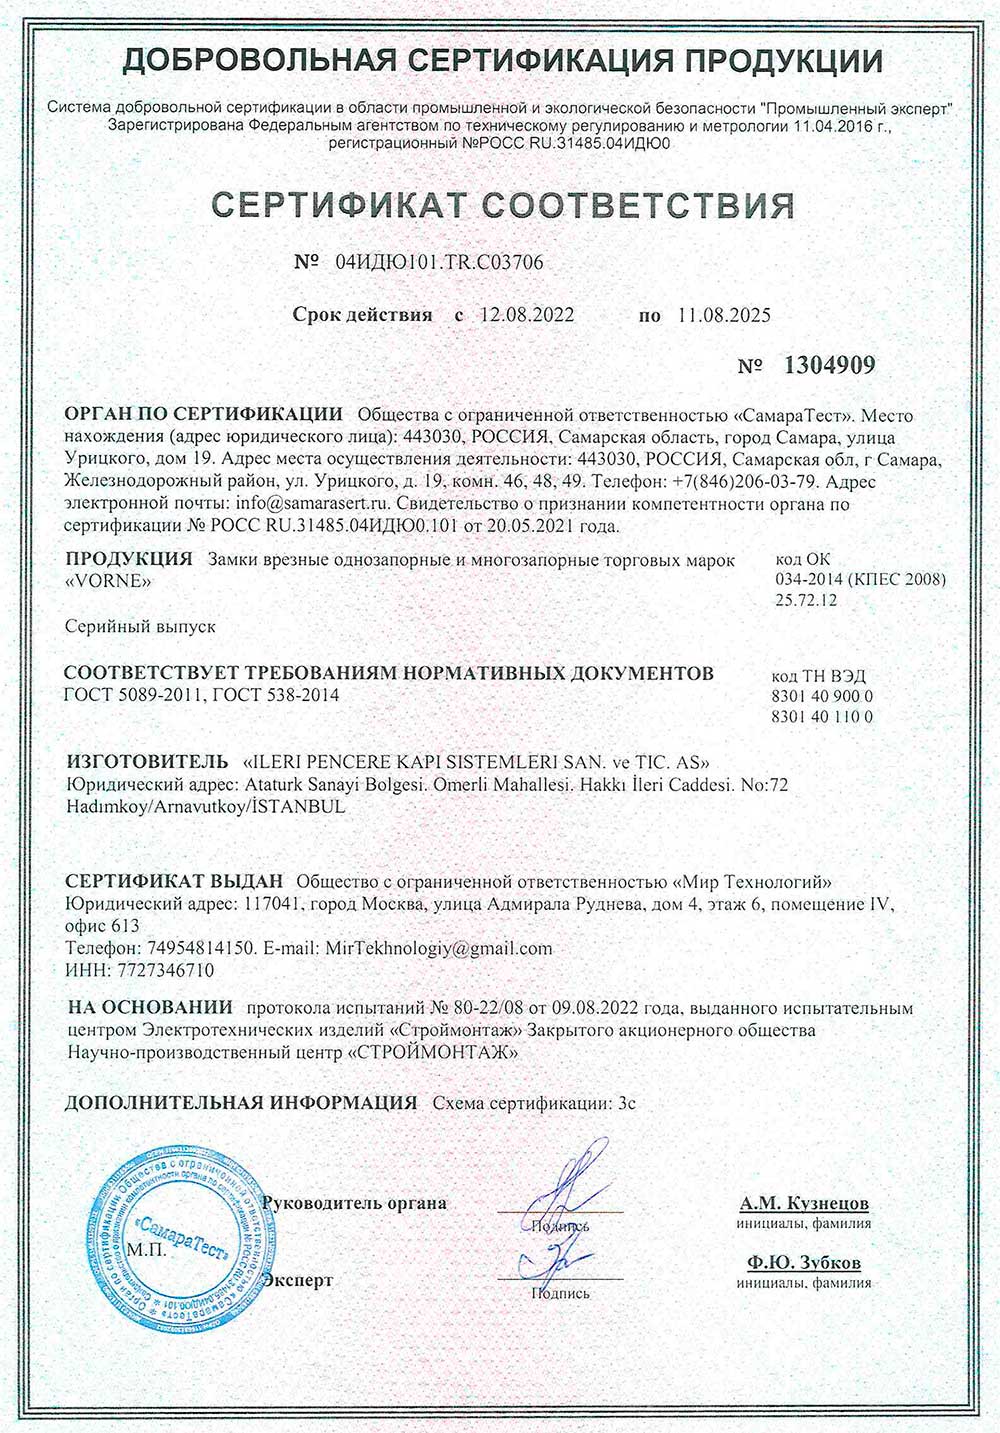 Vorne, замки врезные, сертификат соответствия, 11.08.2025